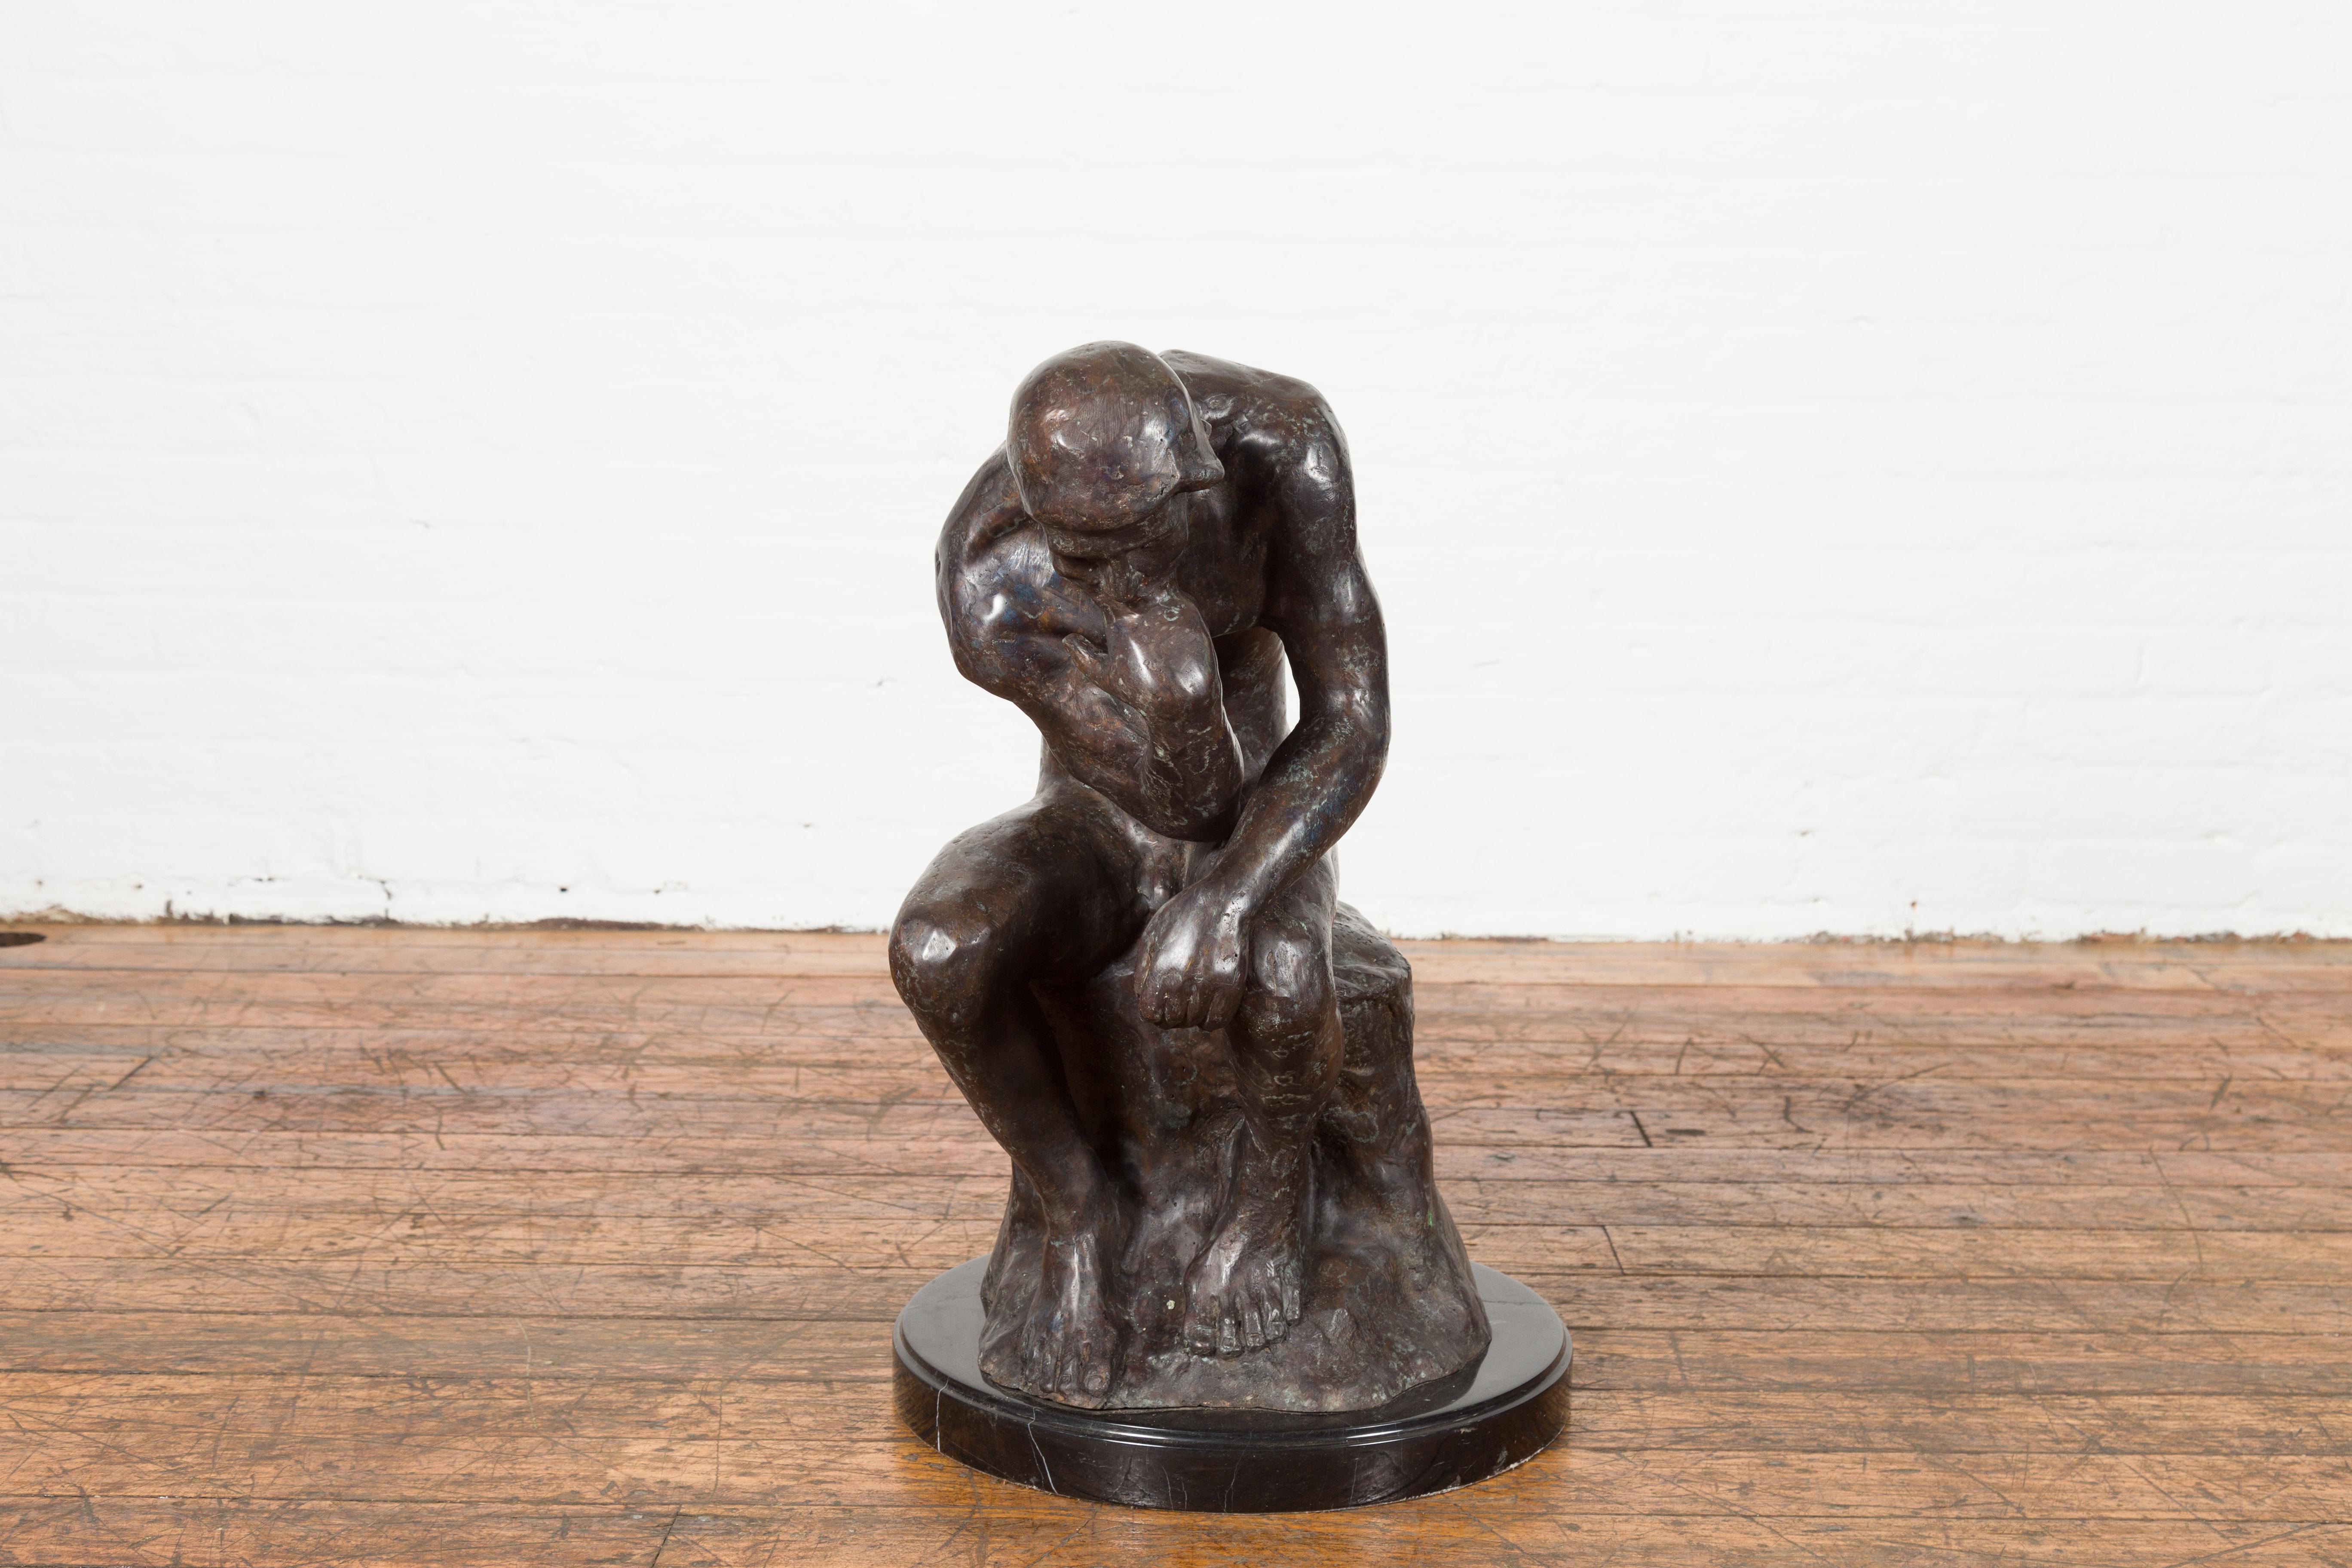 Moulage Sculpture sur socle en bronze coulé à la cire perdue inspirée de The thinker d'Auguste Rodin en vente